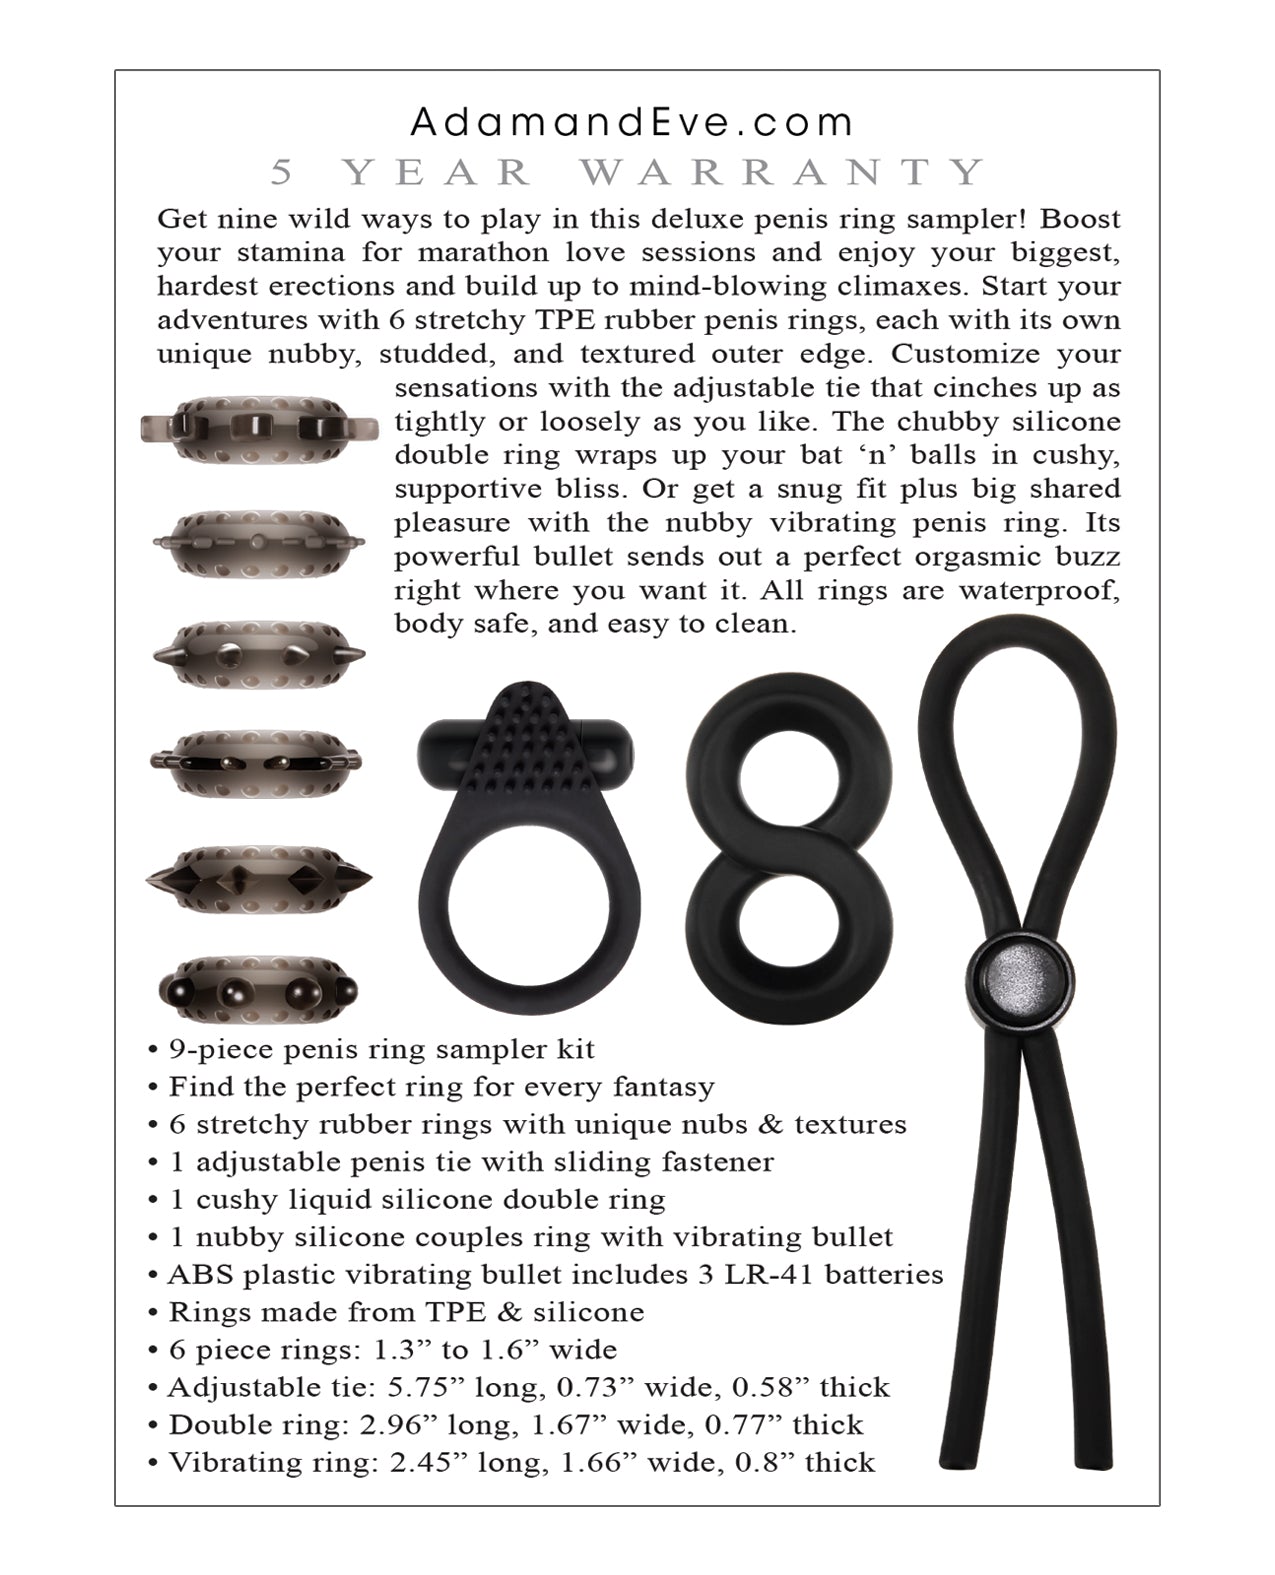 Adam & Eve Adam's Deluxe Penis Ring Sampler - Black-smoke